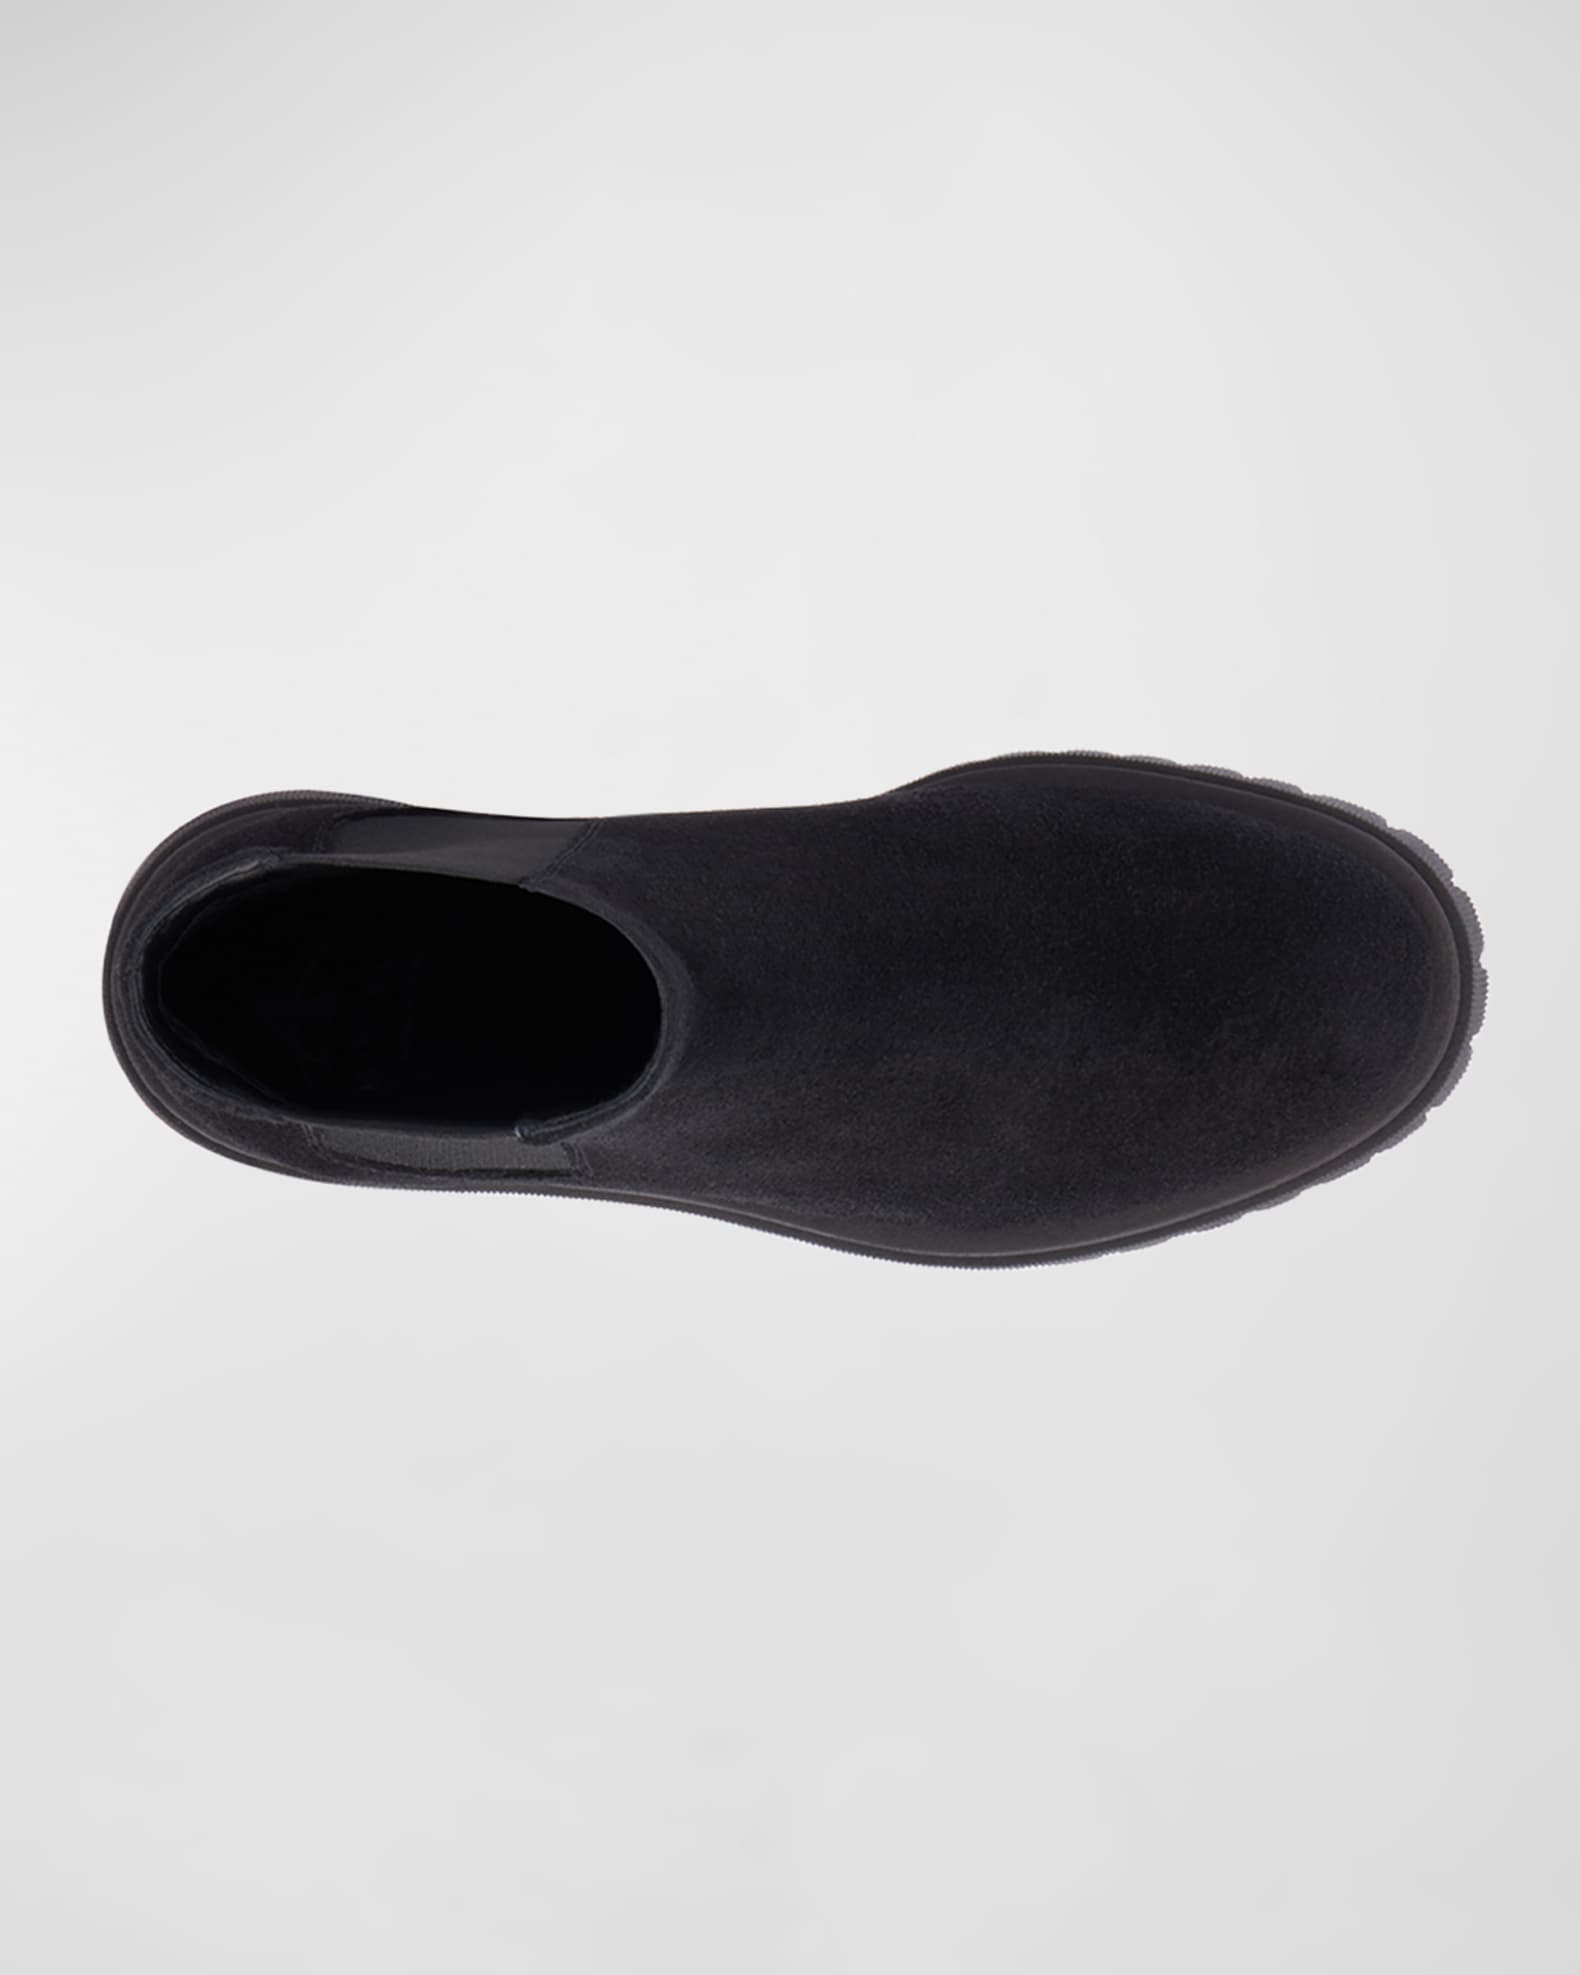 Aquatalia Olessa Suede Chelsea Ankle Boots | Neiman Marcus